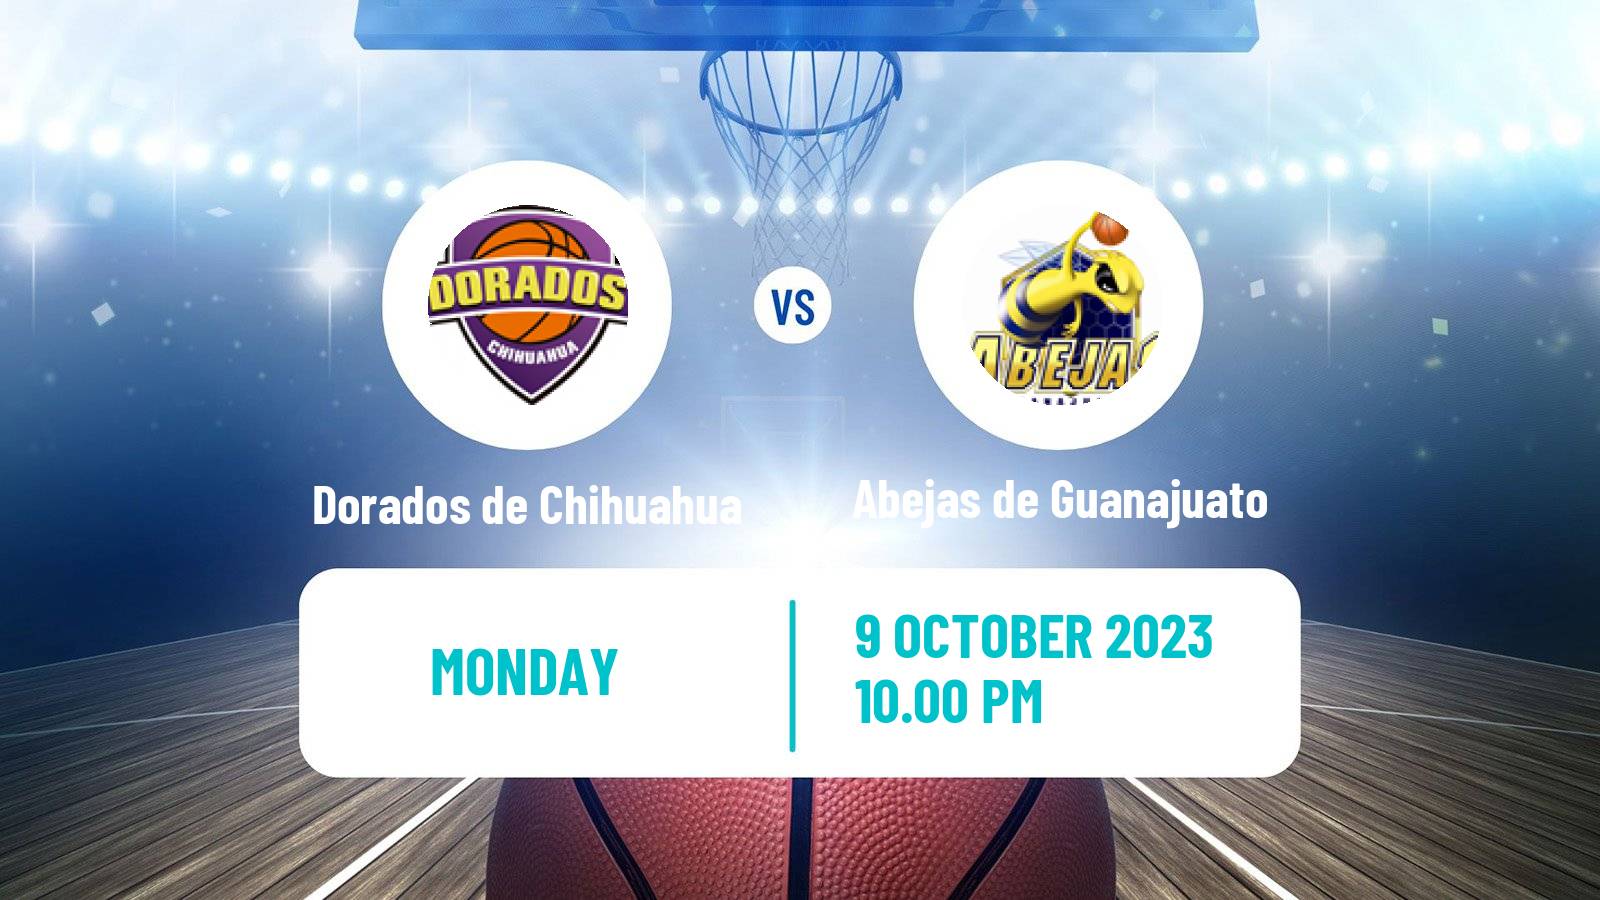 Basketball Mexican LNBP Dorados de Chihuahua - Abejas de Guanajuato